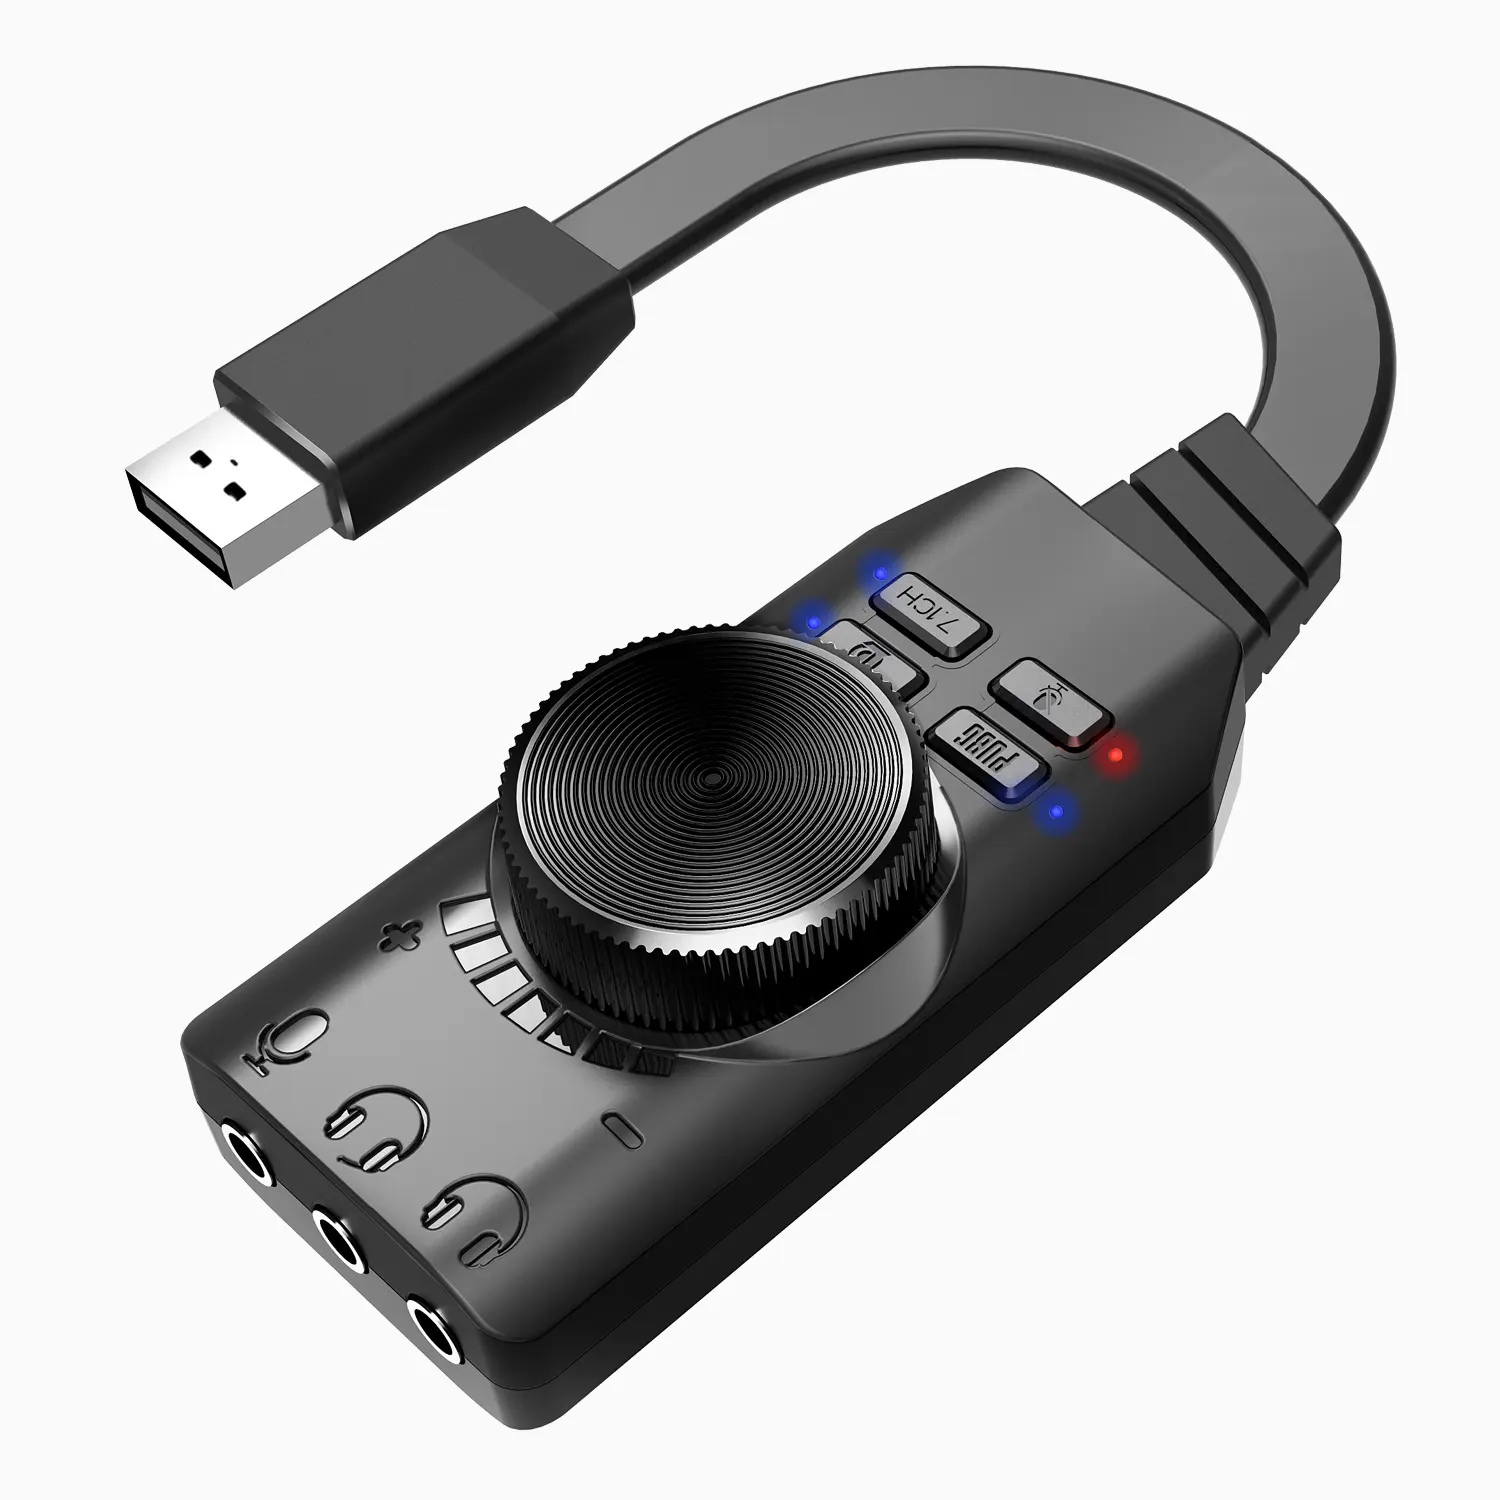 Plextone USB כרטיס קול וירטואלי 7.1ch כרטיס קול USB אודיו כרטיס קול GS3